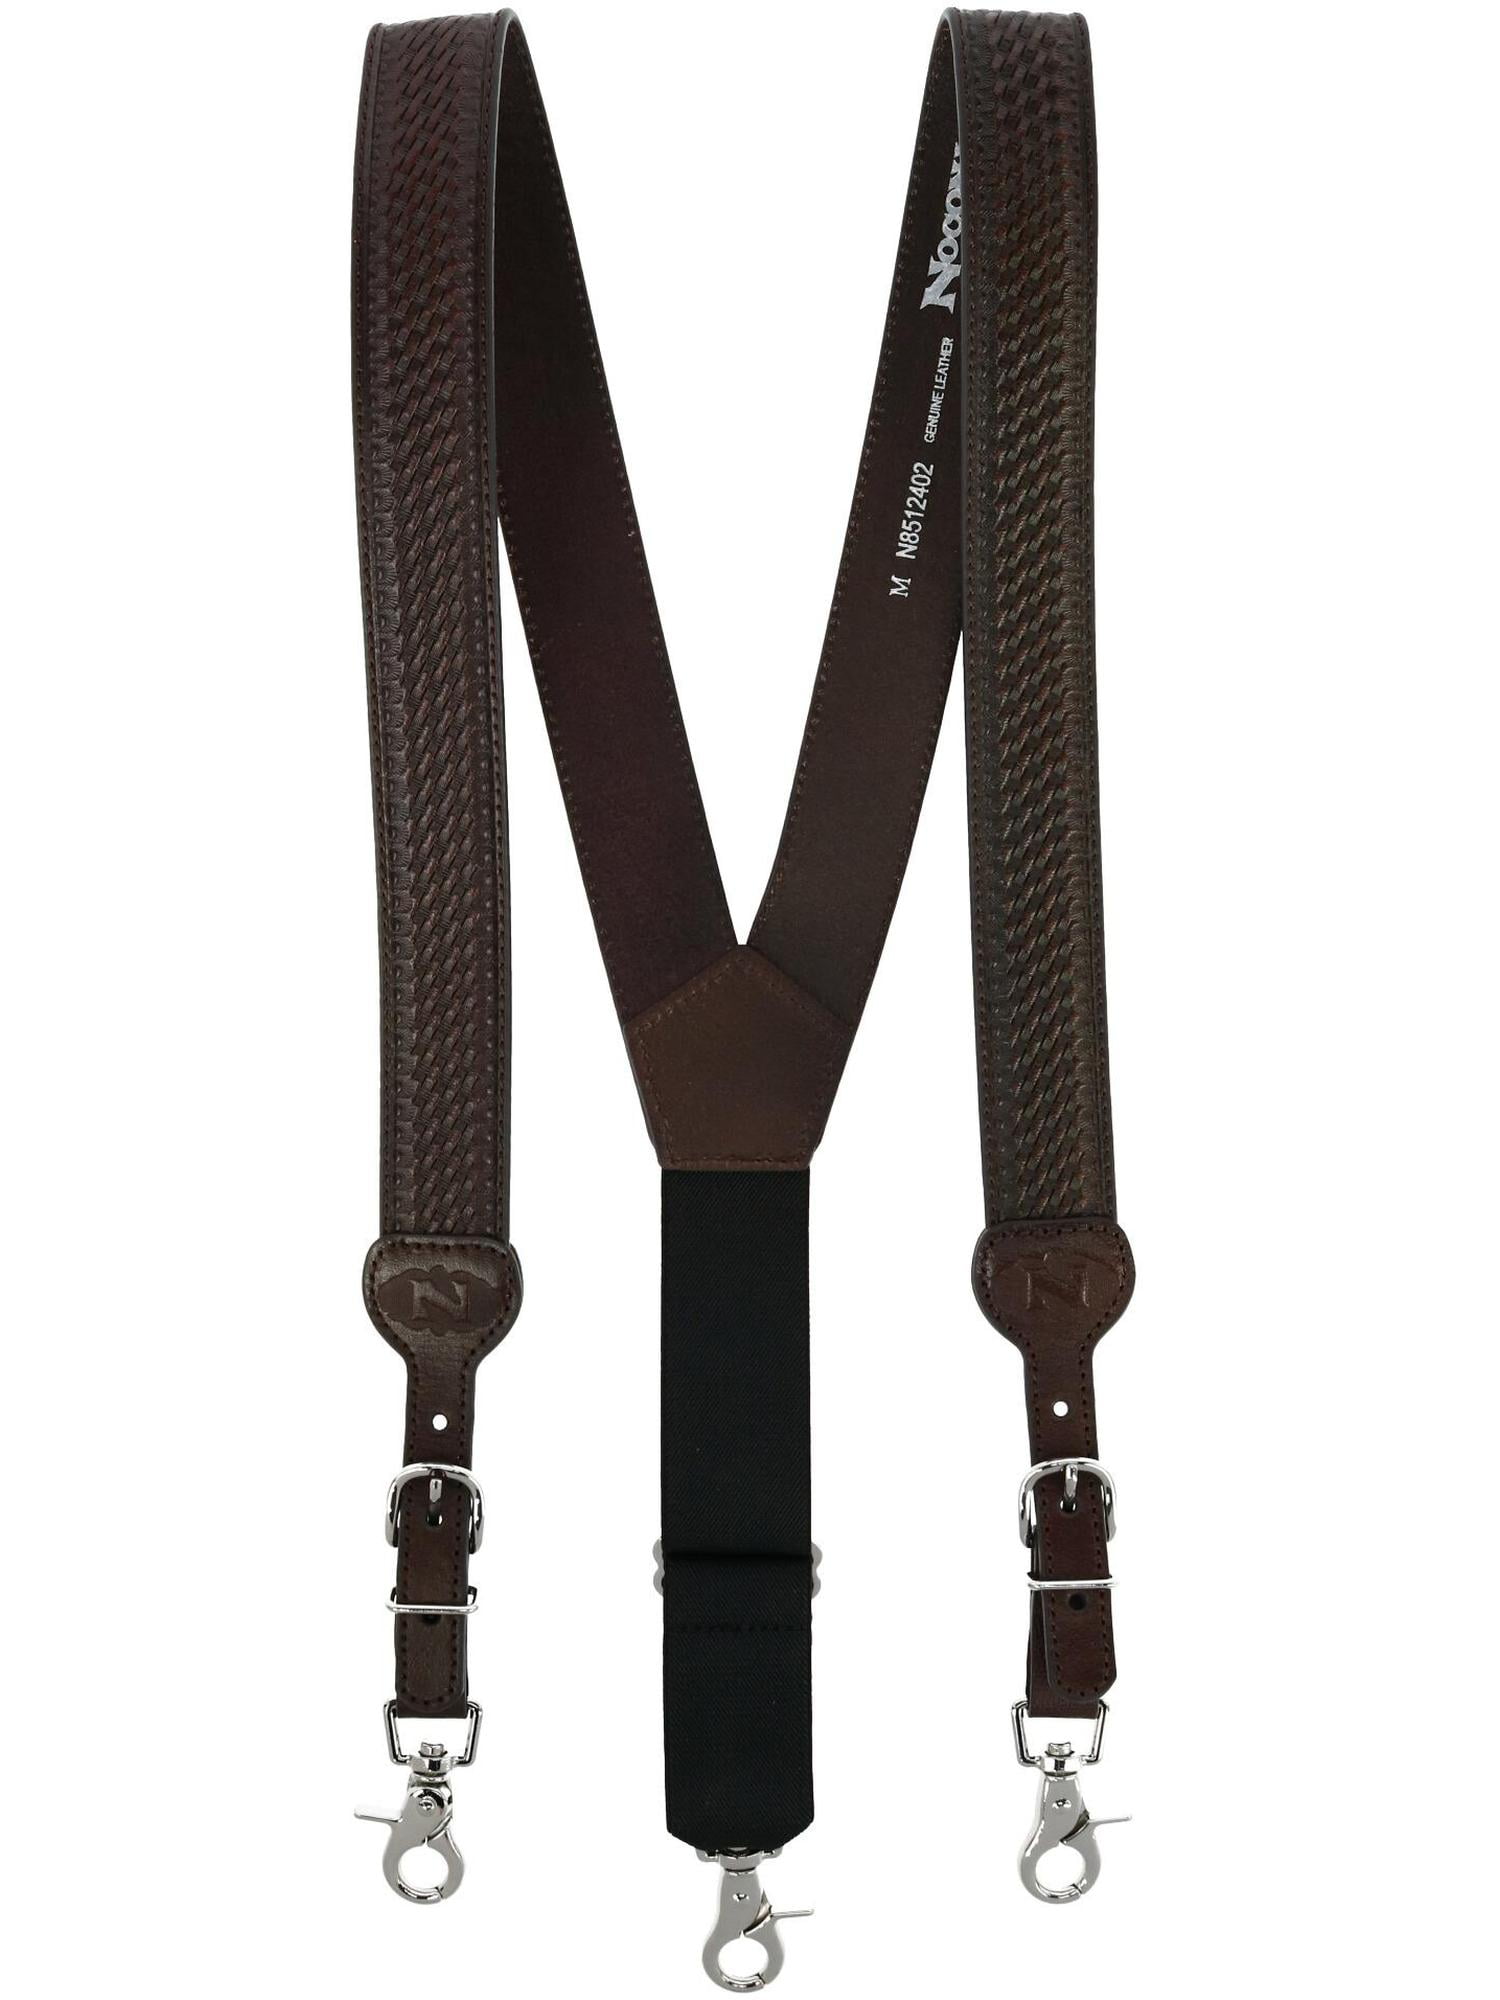 Details about   Custom Leather Shoulder Bag Strap W/ Adjustable Buckle 1.5” wide Brown..Tan 